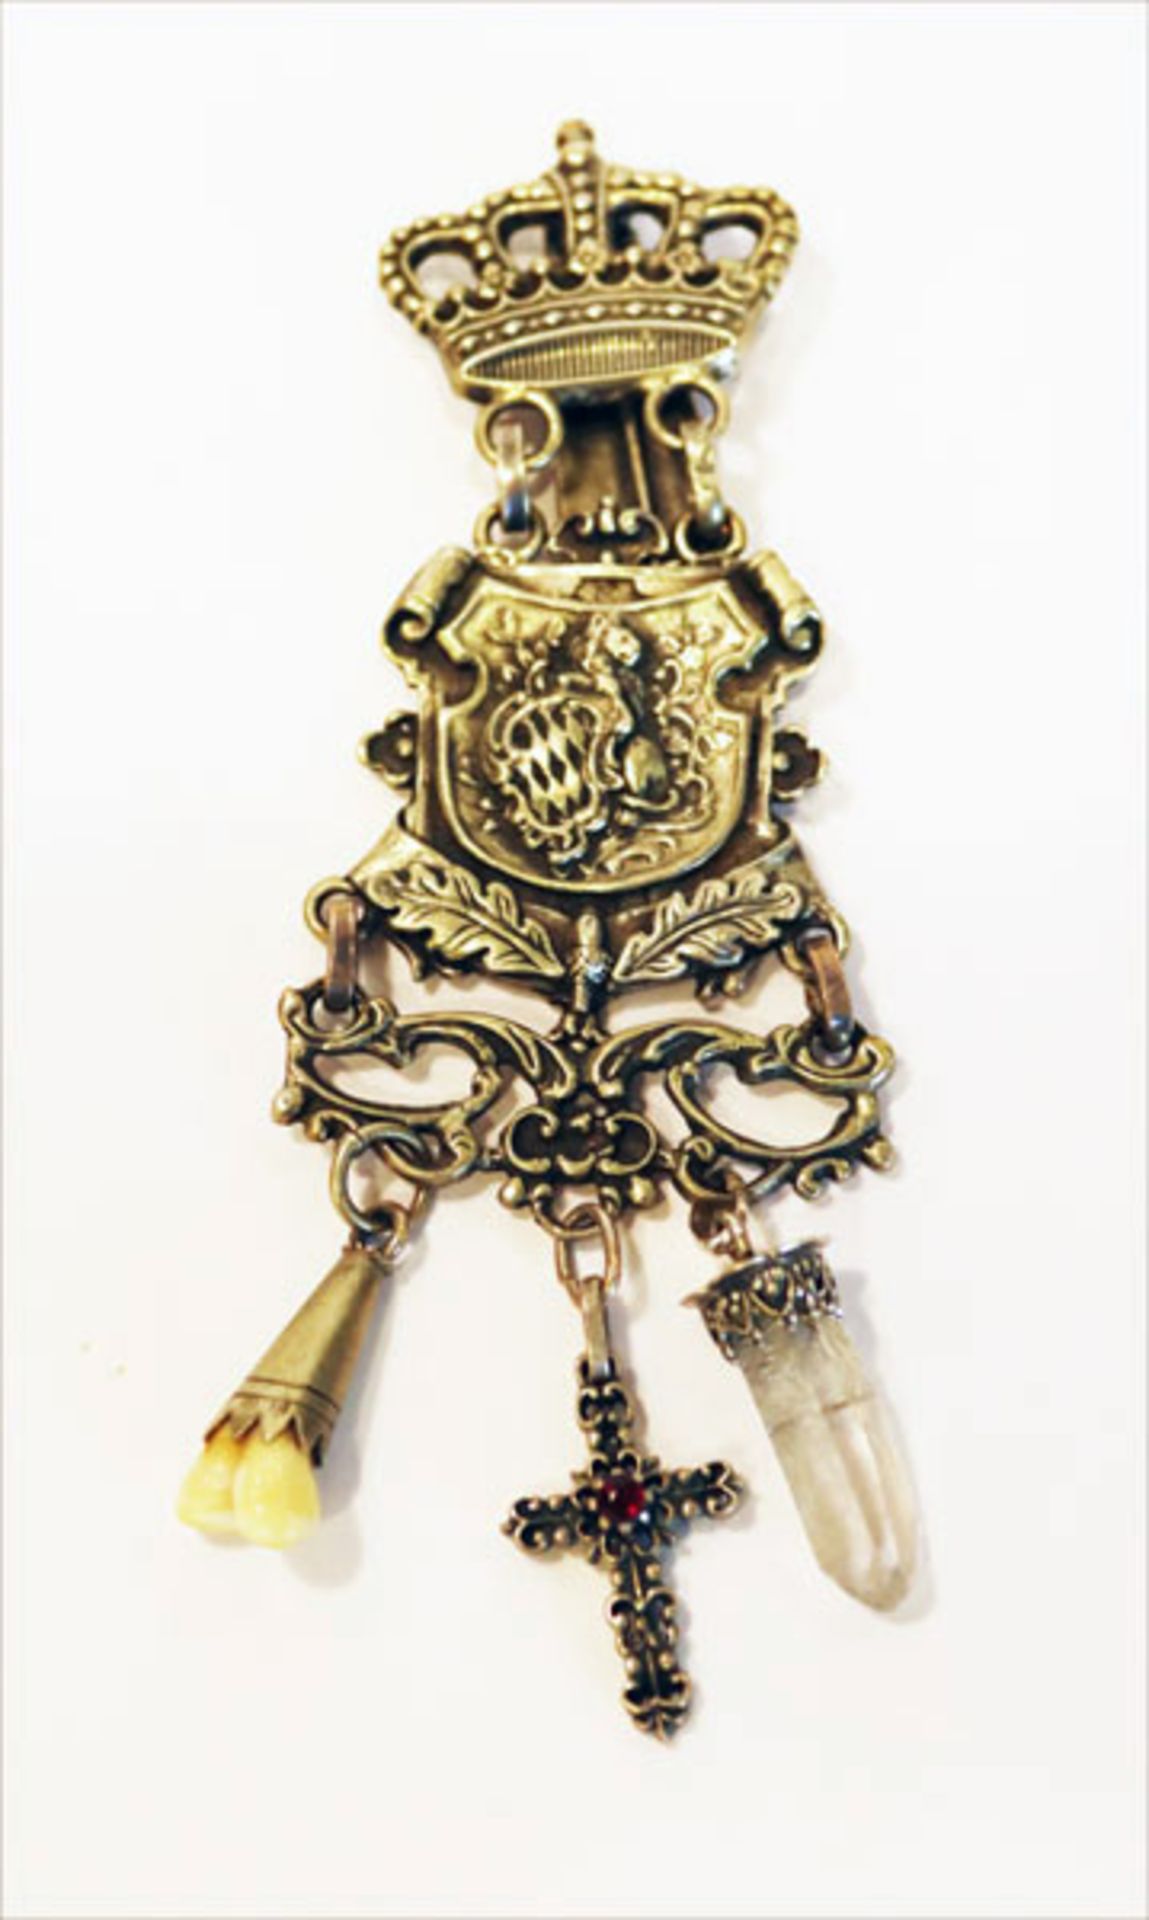 Silber Rockstecker mit reliefierter Krone und bayerischem Wappen, sowie 3 Anhänger, Kreuz,